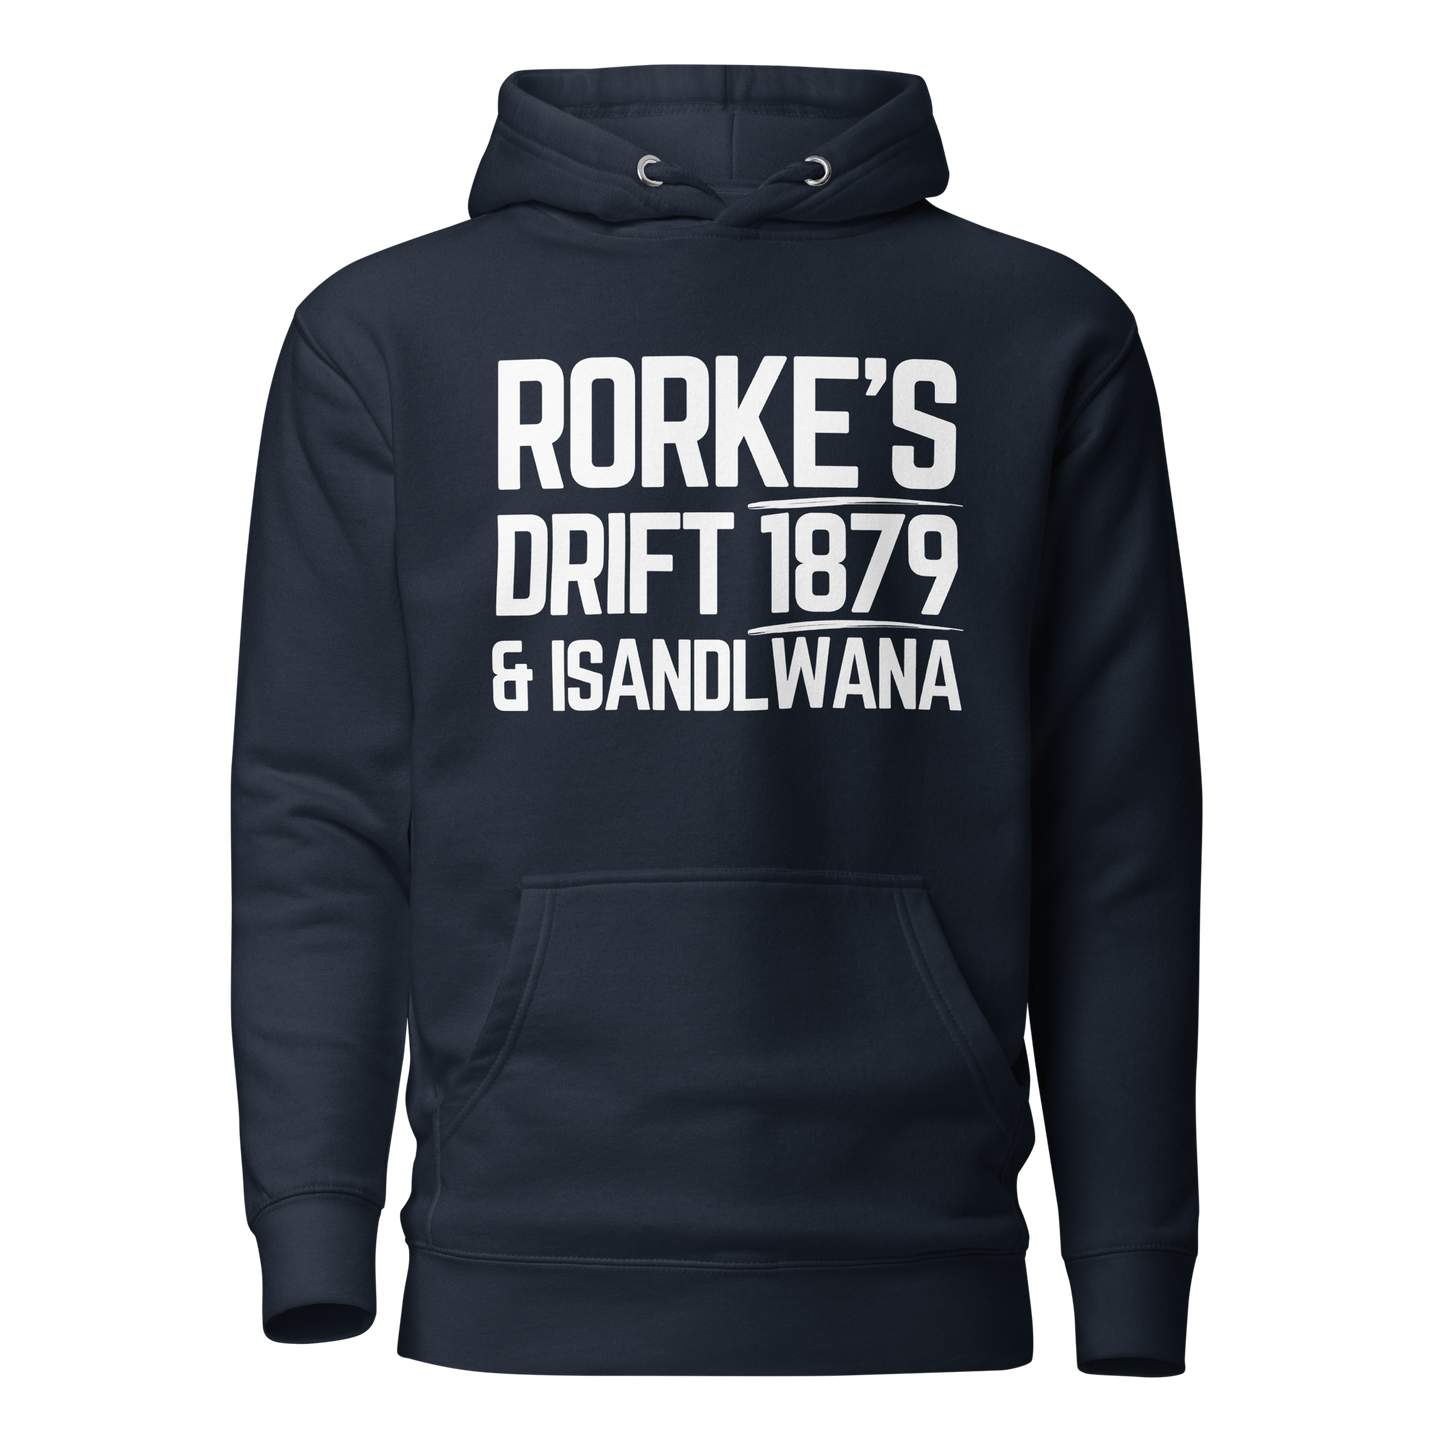 Rorke's Drift & Isandlwana (Premium Hoodie)